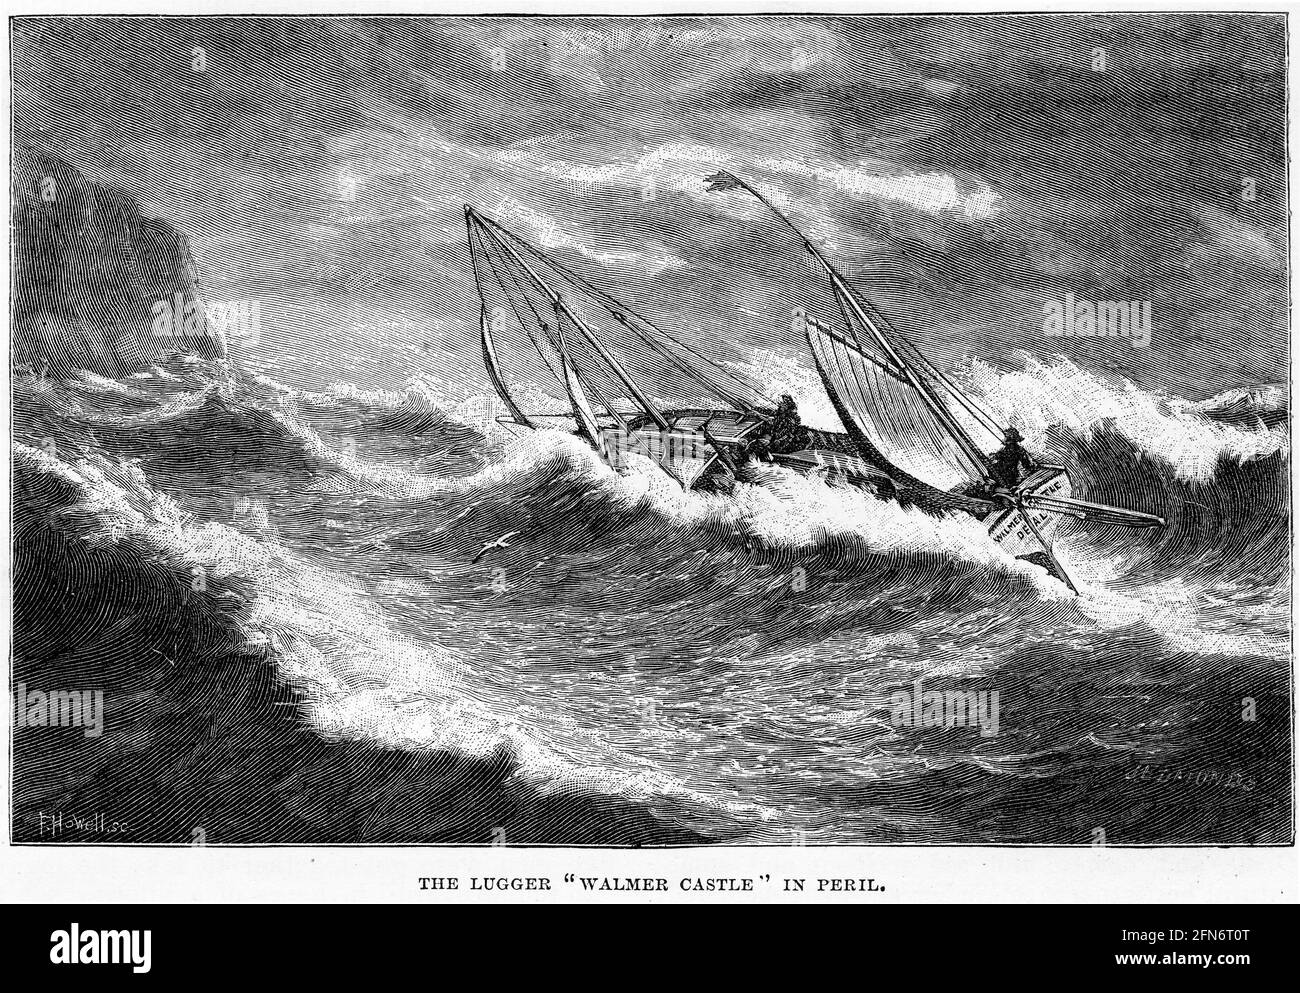 Gravure du château de Walmer en péril au large de la côte d'Angleterre pendant une tempête, vers 1890 Banque D'Images